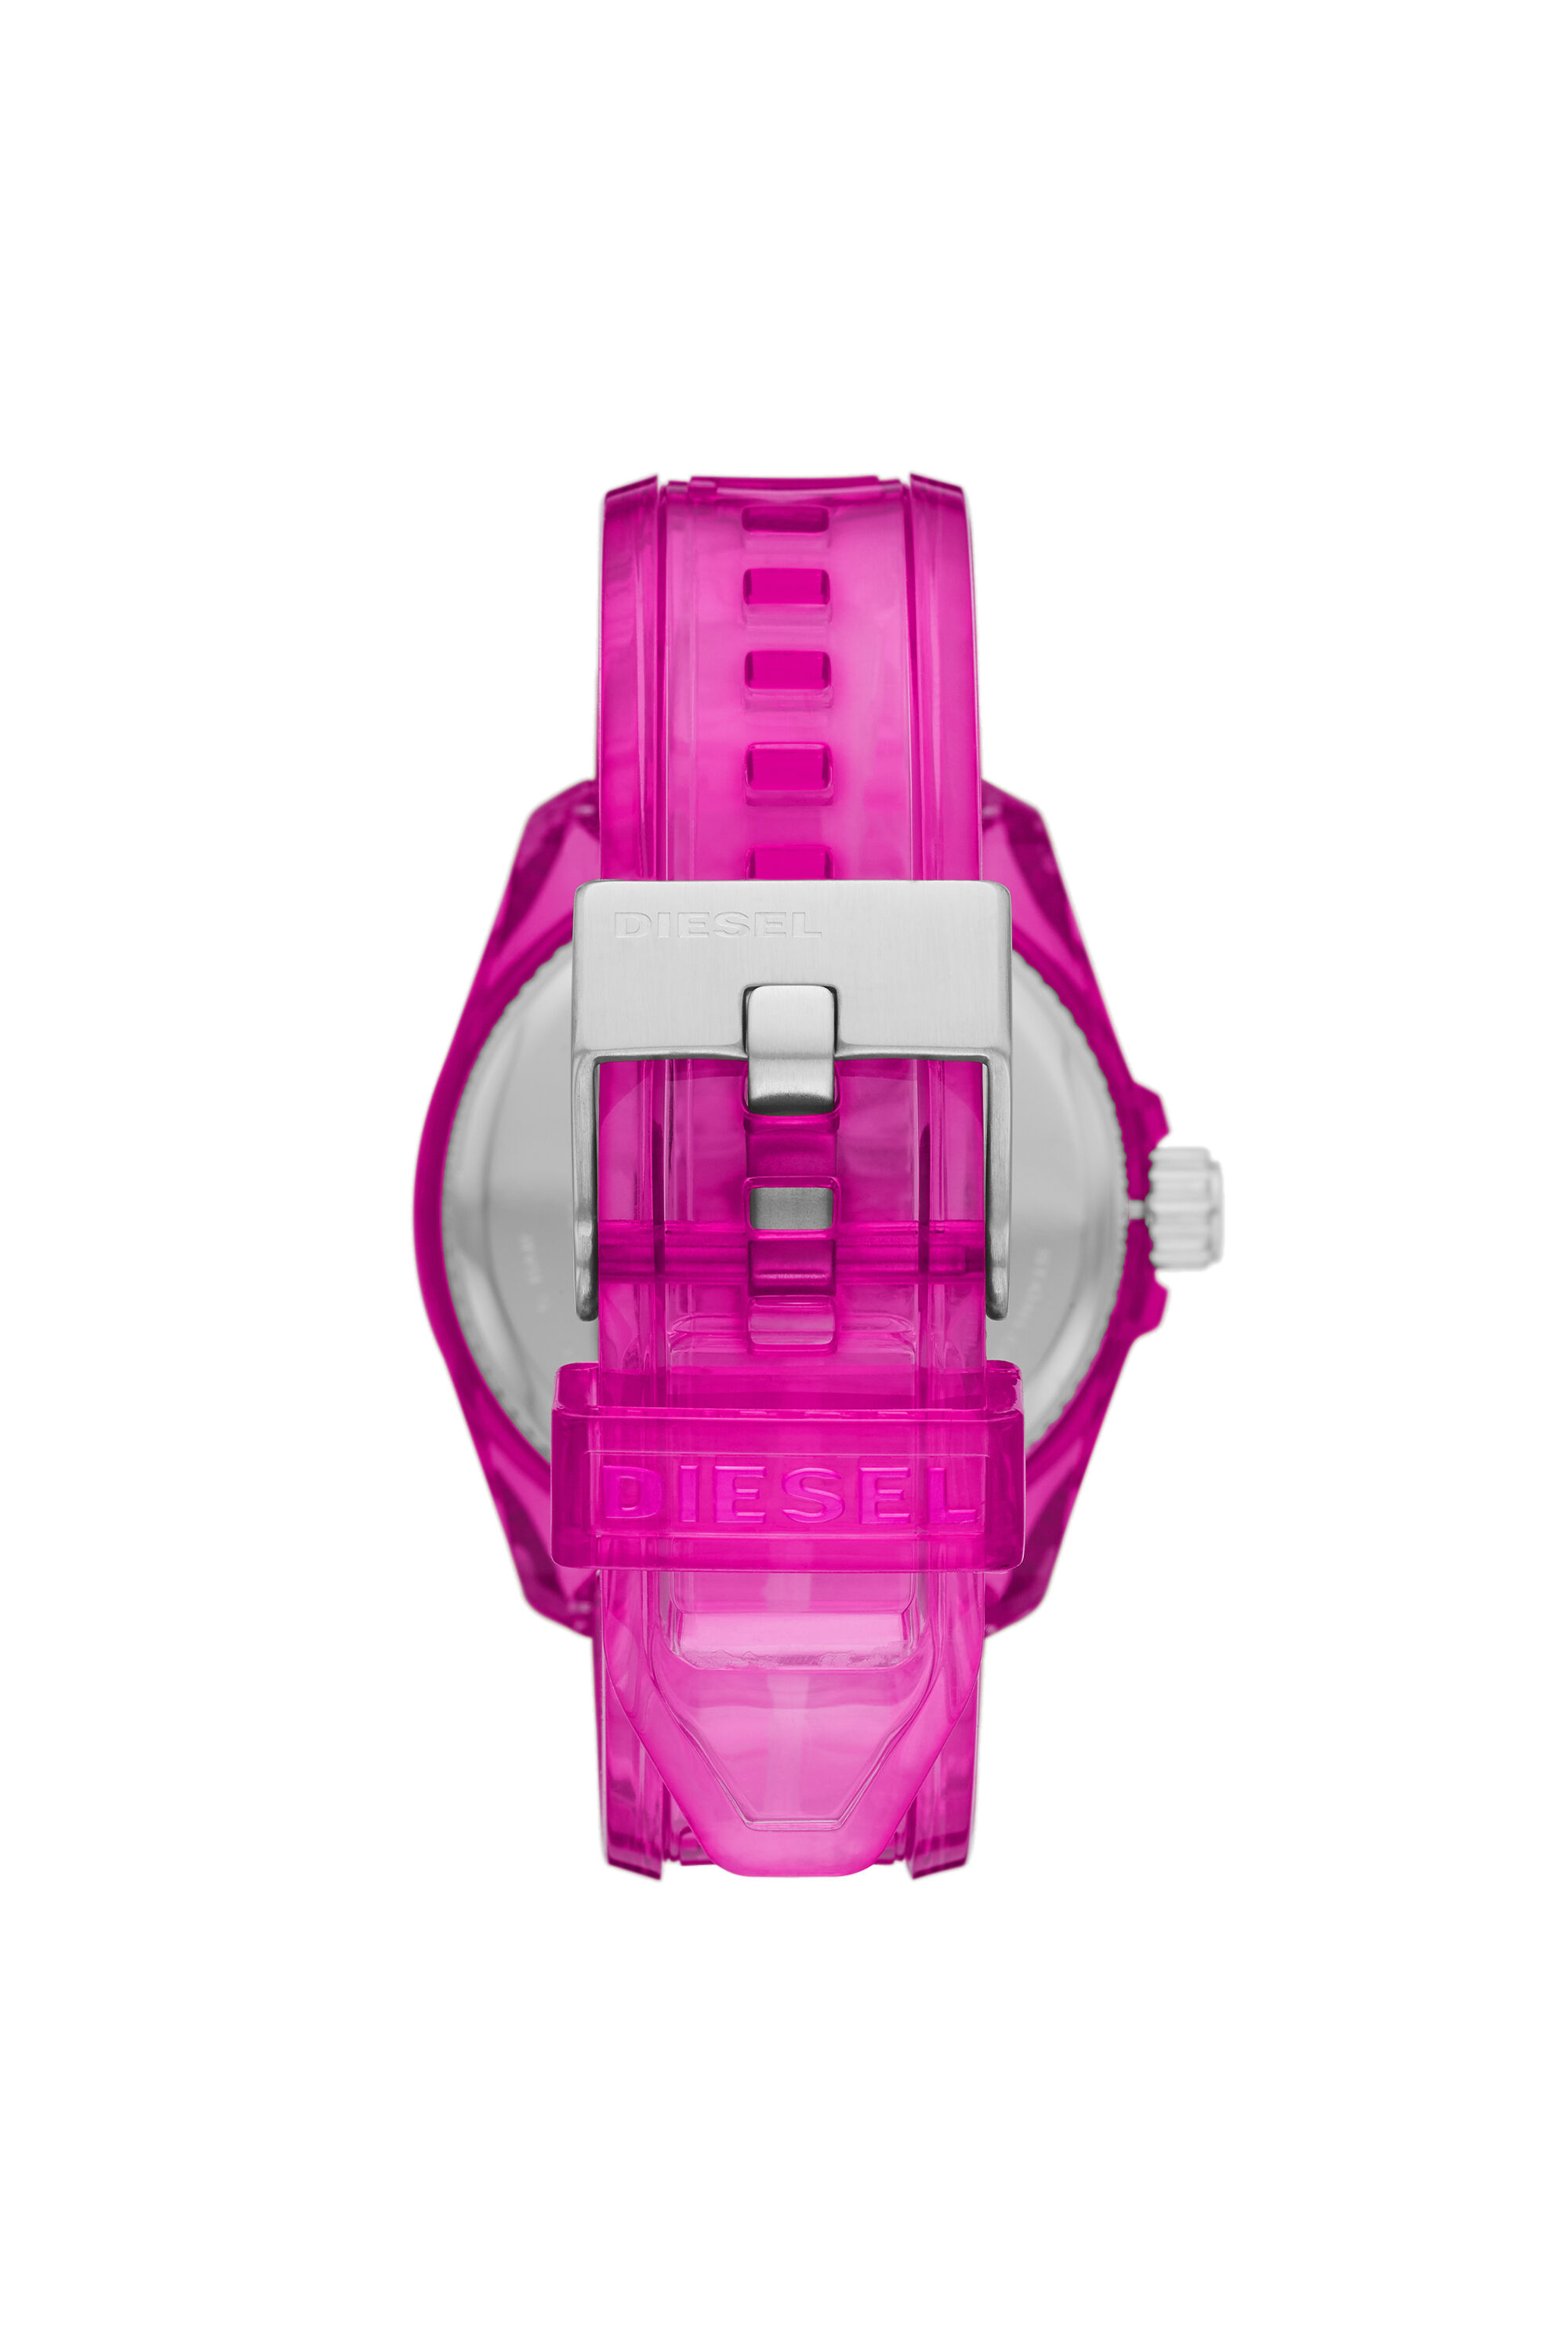 Diesel - DZ1929, Unisex MS9 three-hand pink transparent watch in ピンク - Image 2